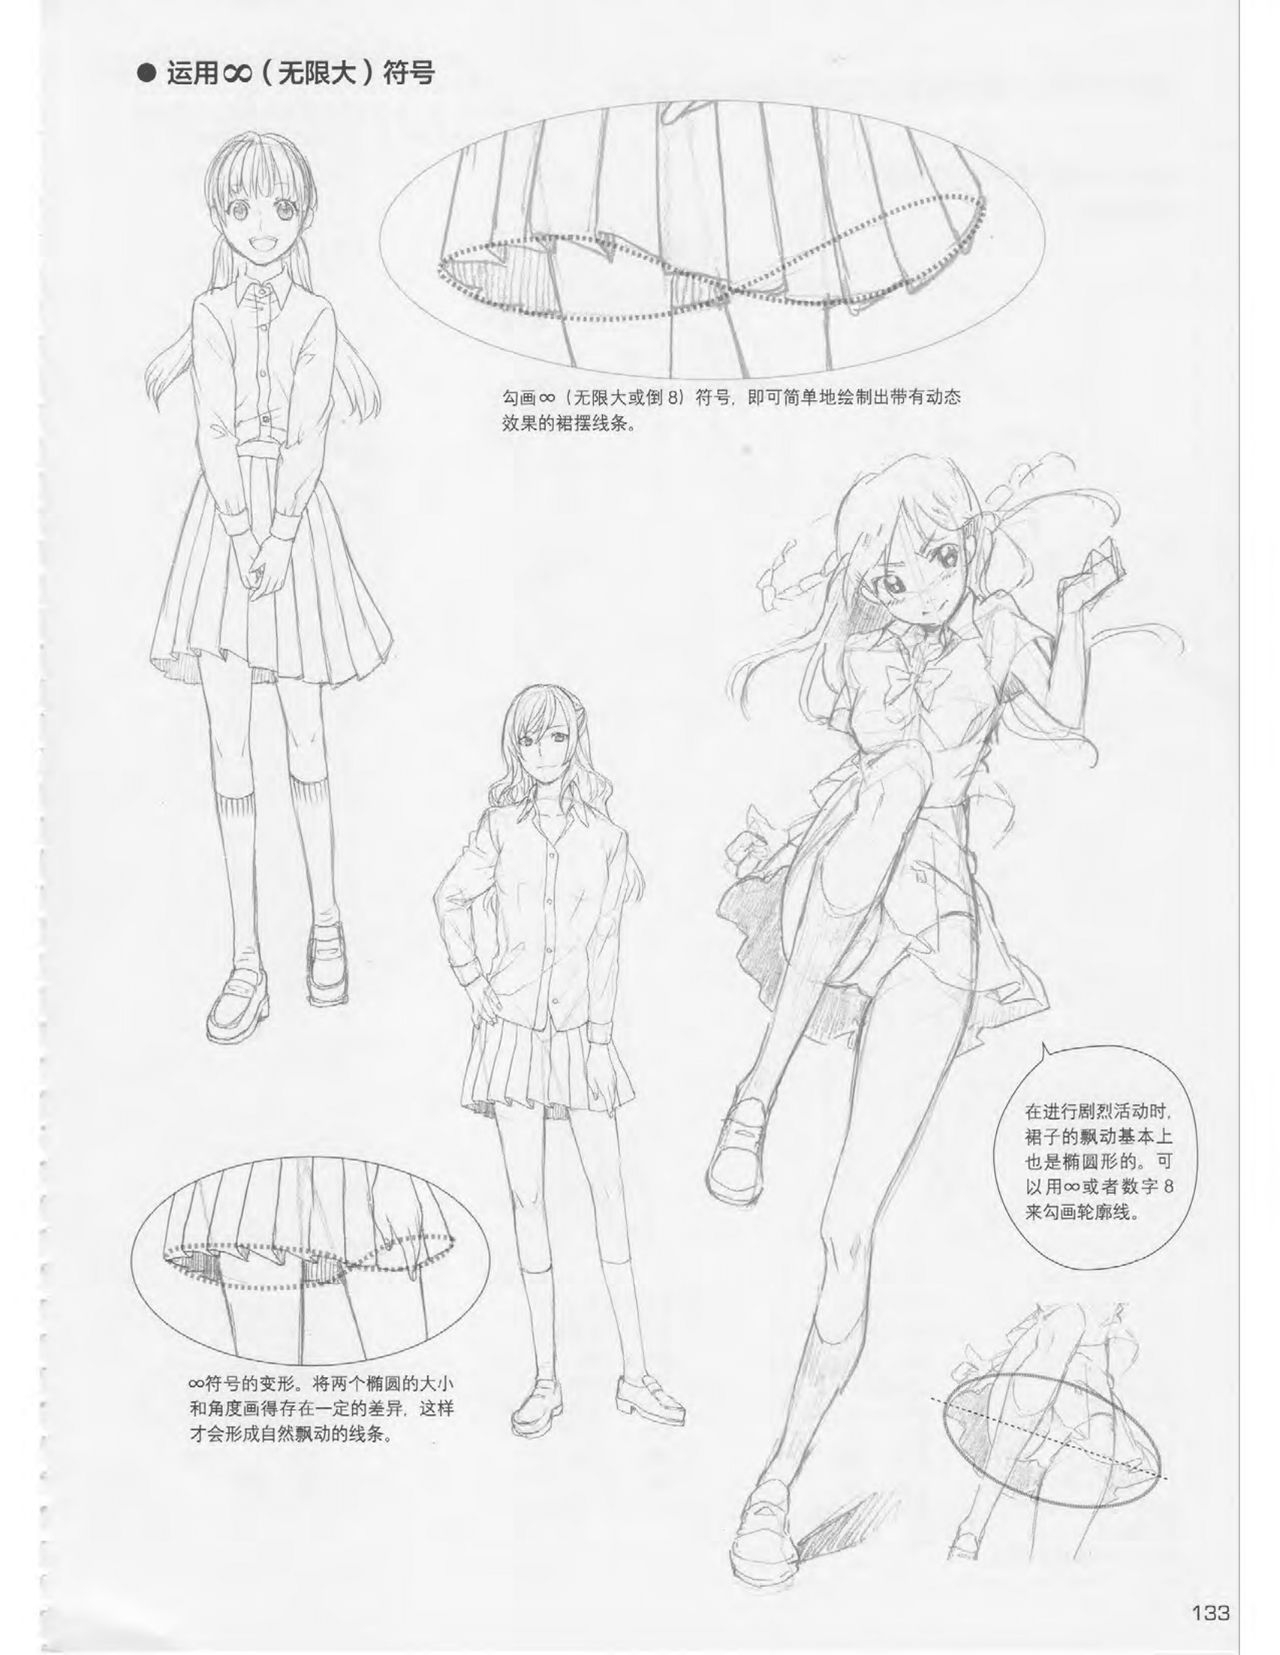 Japanese Manga Master Lecture 3: Lin Akira and Kakumaru Maru Talk About Glamorous Character Modeling 132